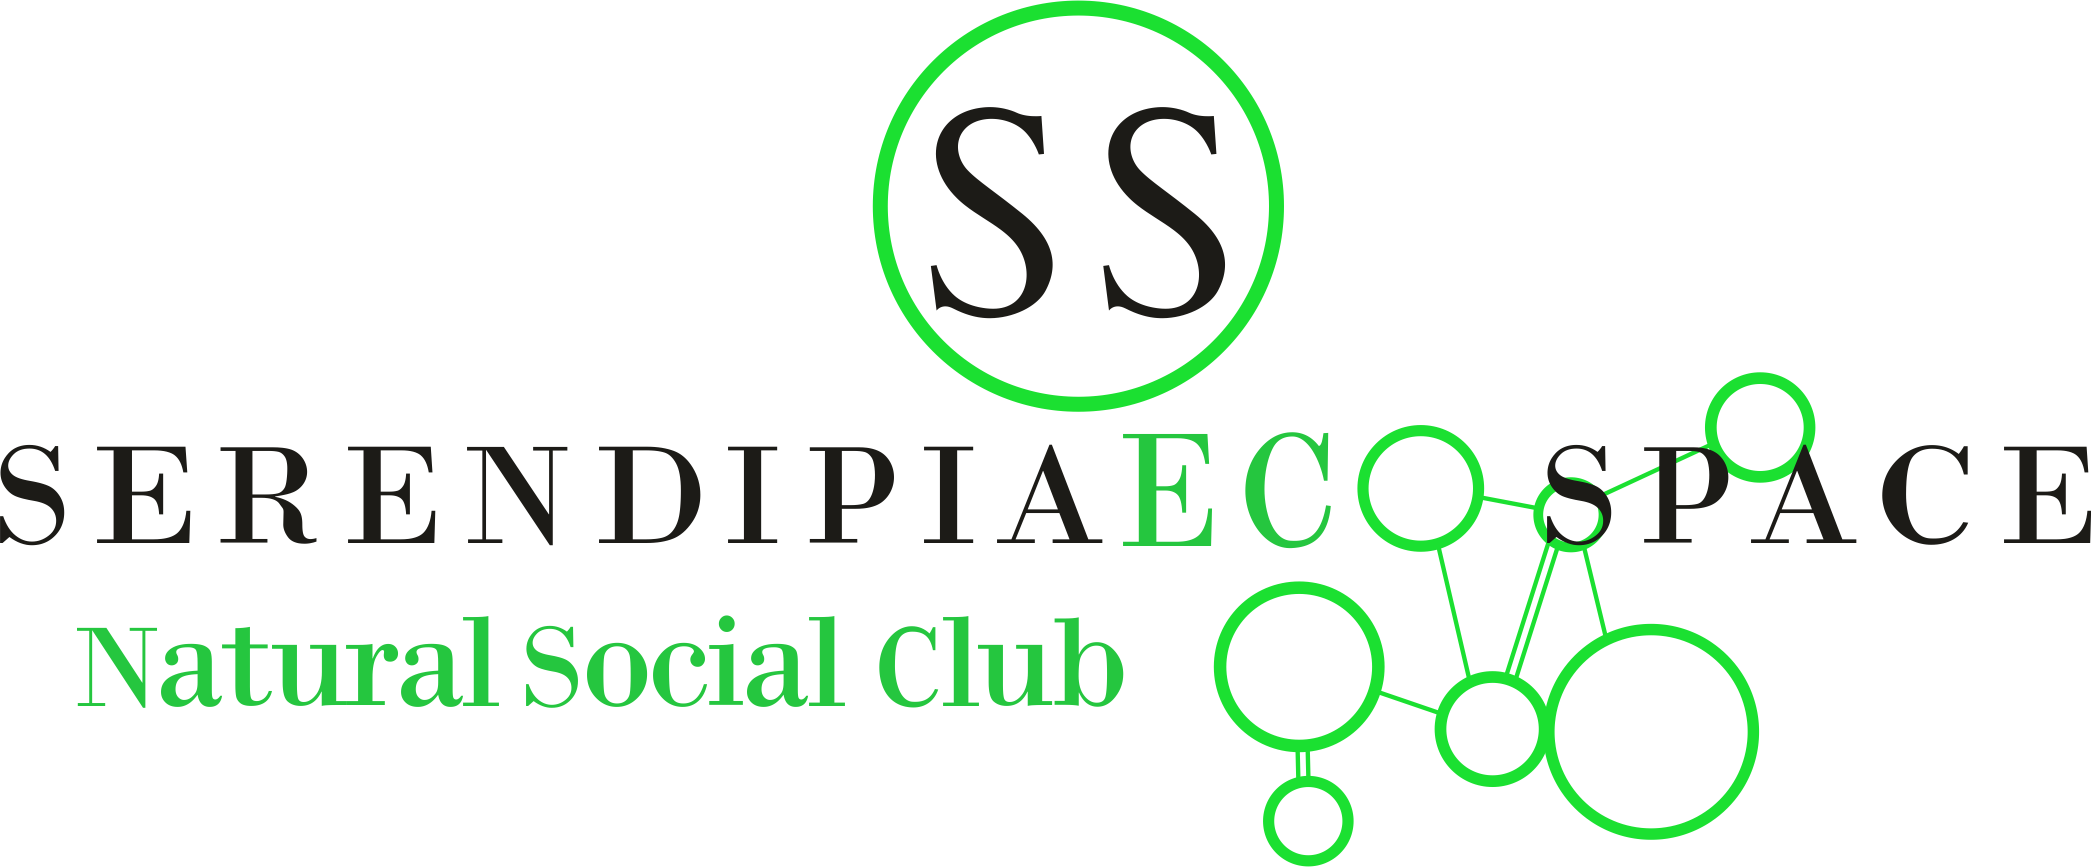 SERENDIPIA SOCIAL CLUB | EN TENERIFE